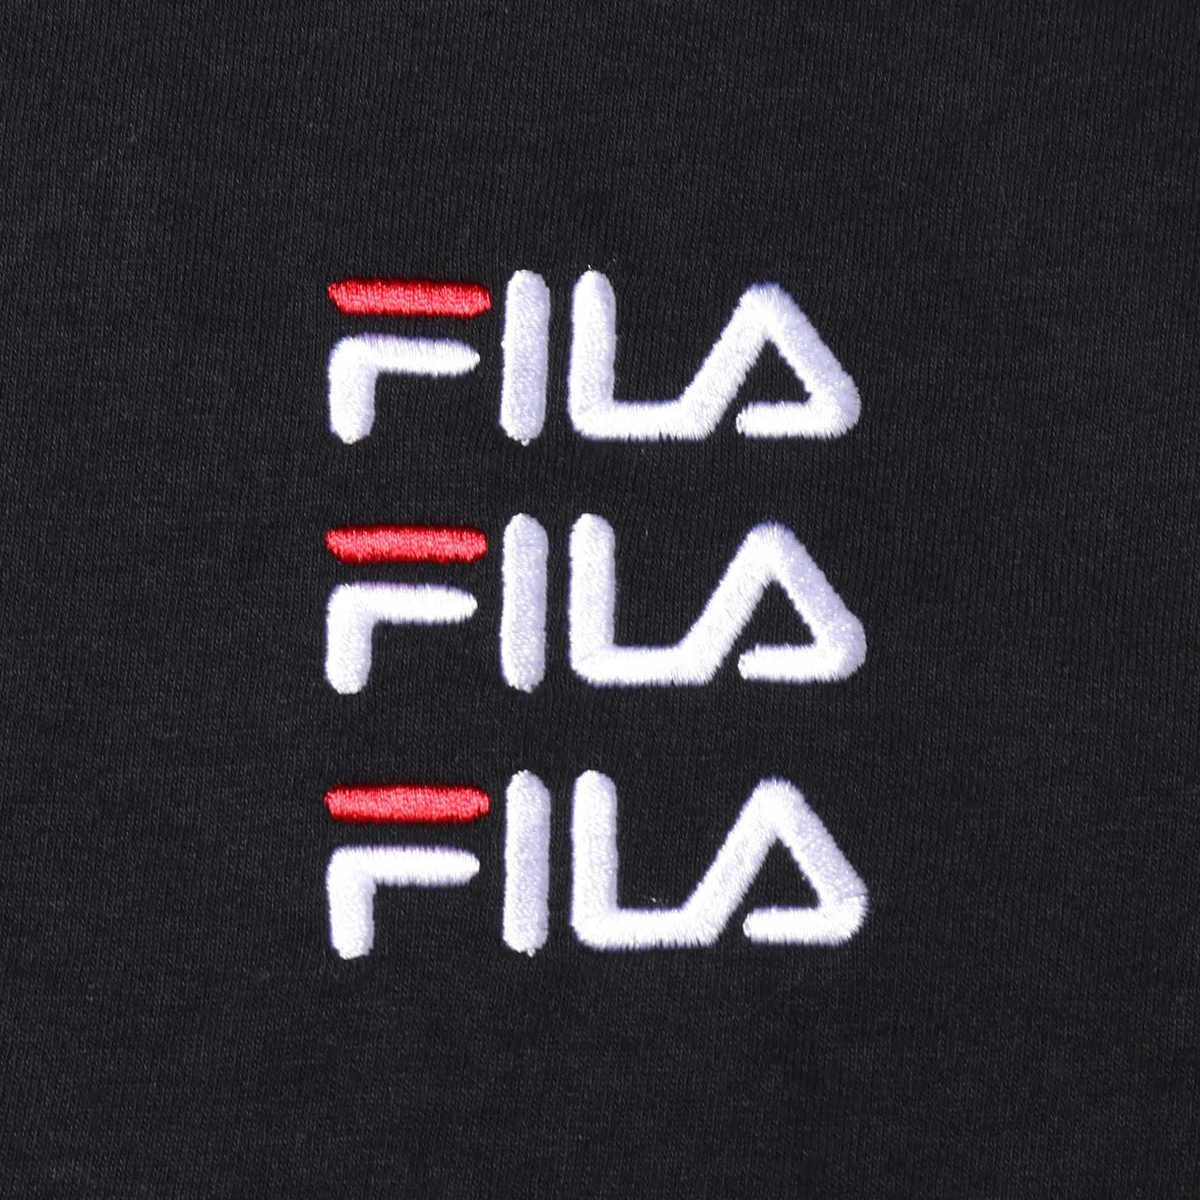 楽天市場 Fila X Atmos Triple Logo Embroidery T Shirt フィラ アトモス トリプル ロゴ エンブロイダリー ティーシャツ Black メンズ レディース Tシャツ 18fa S At C Atmos Tokyo